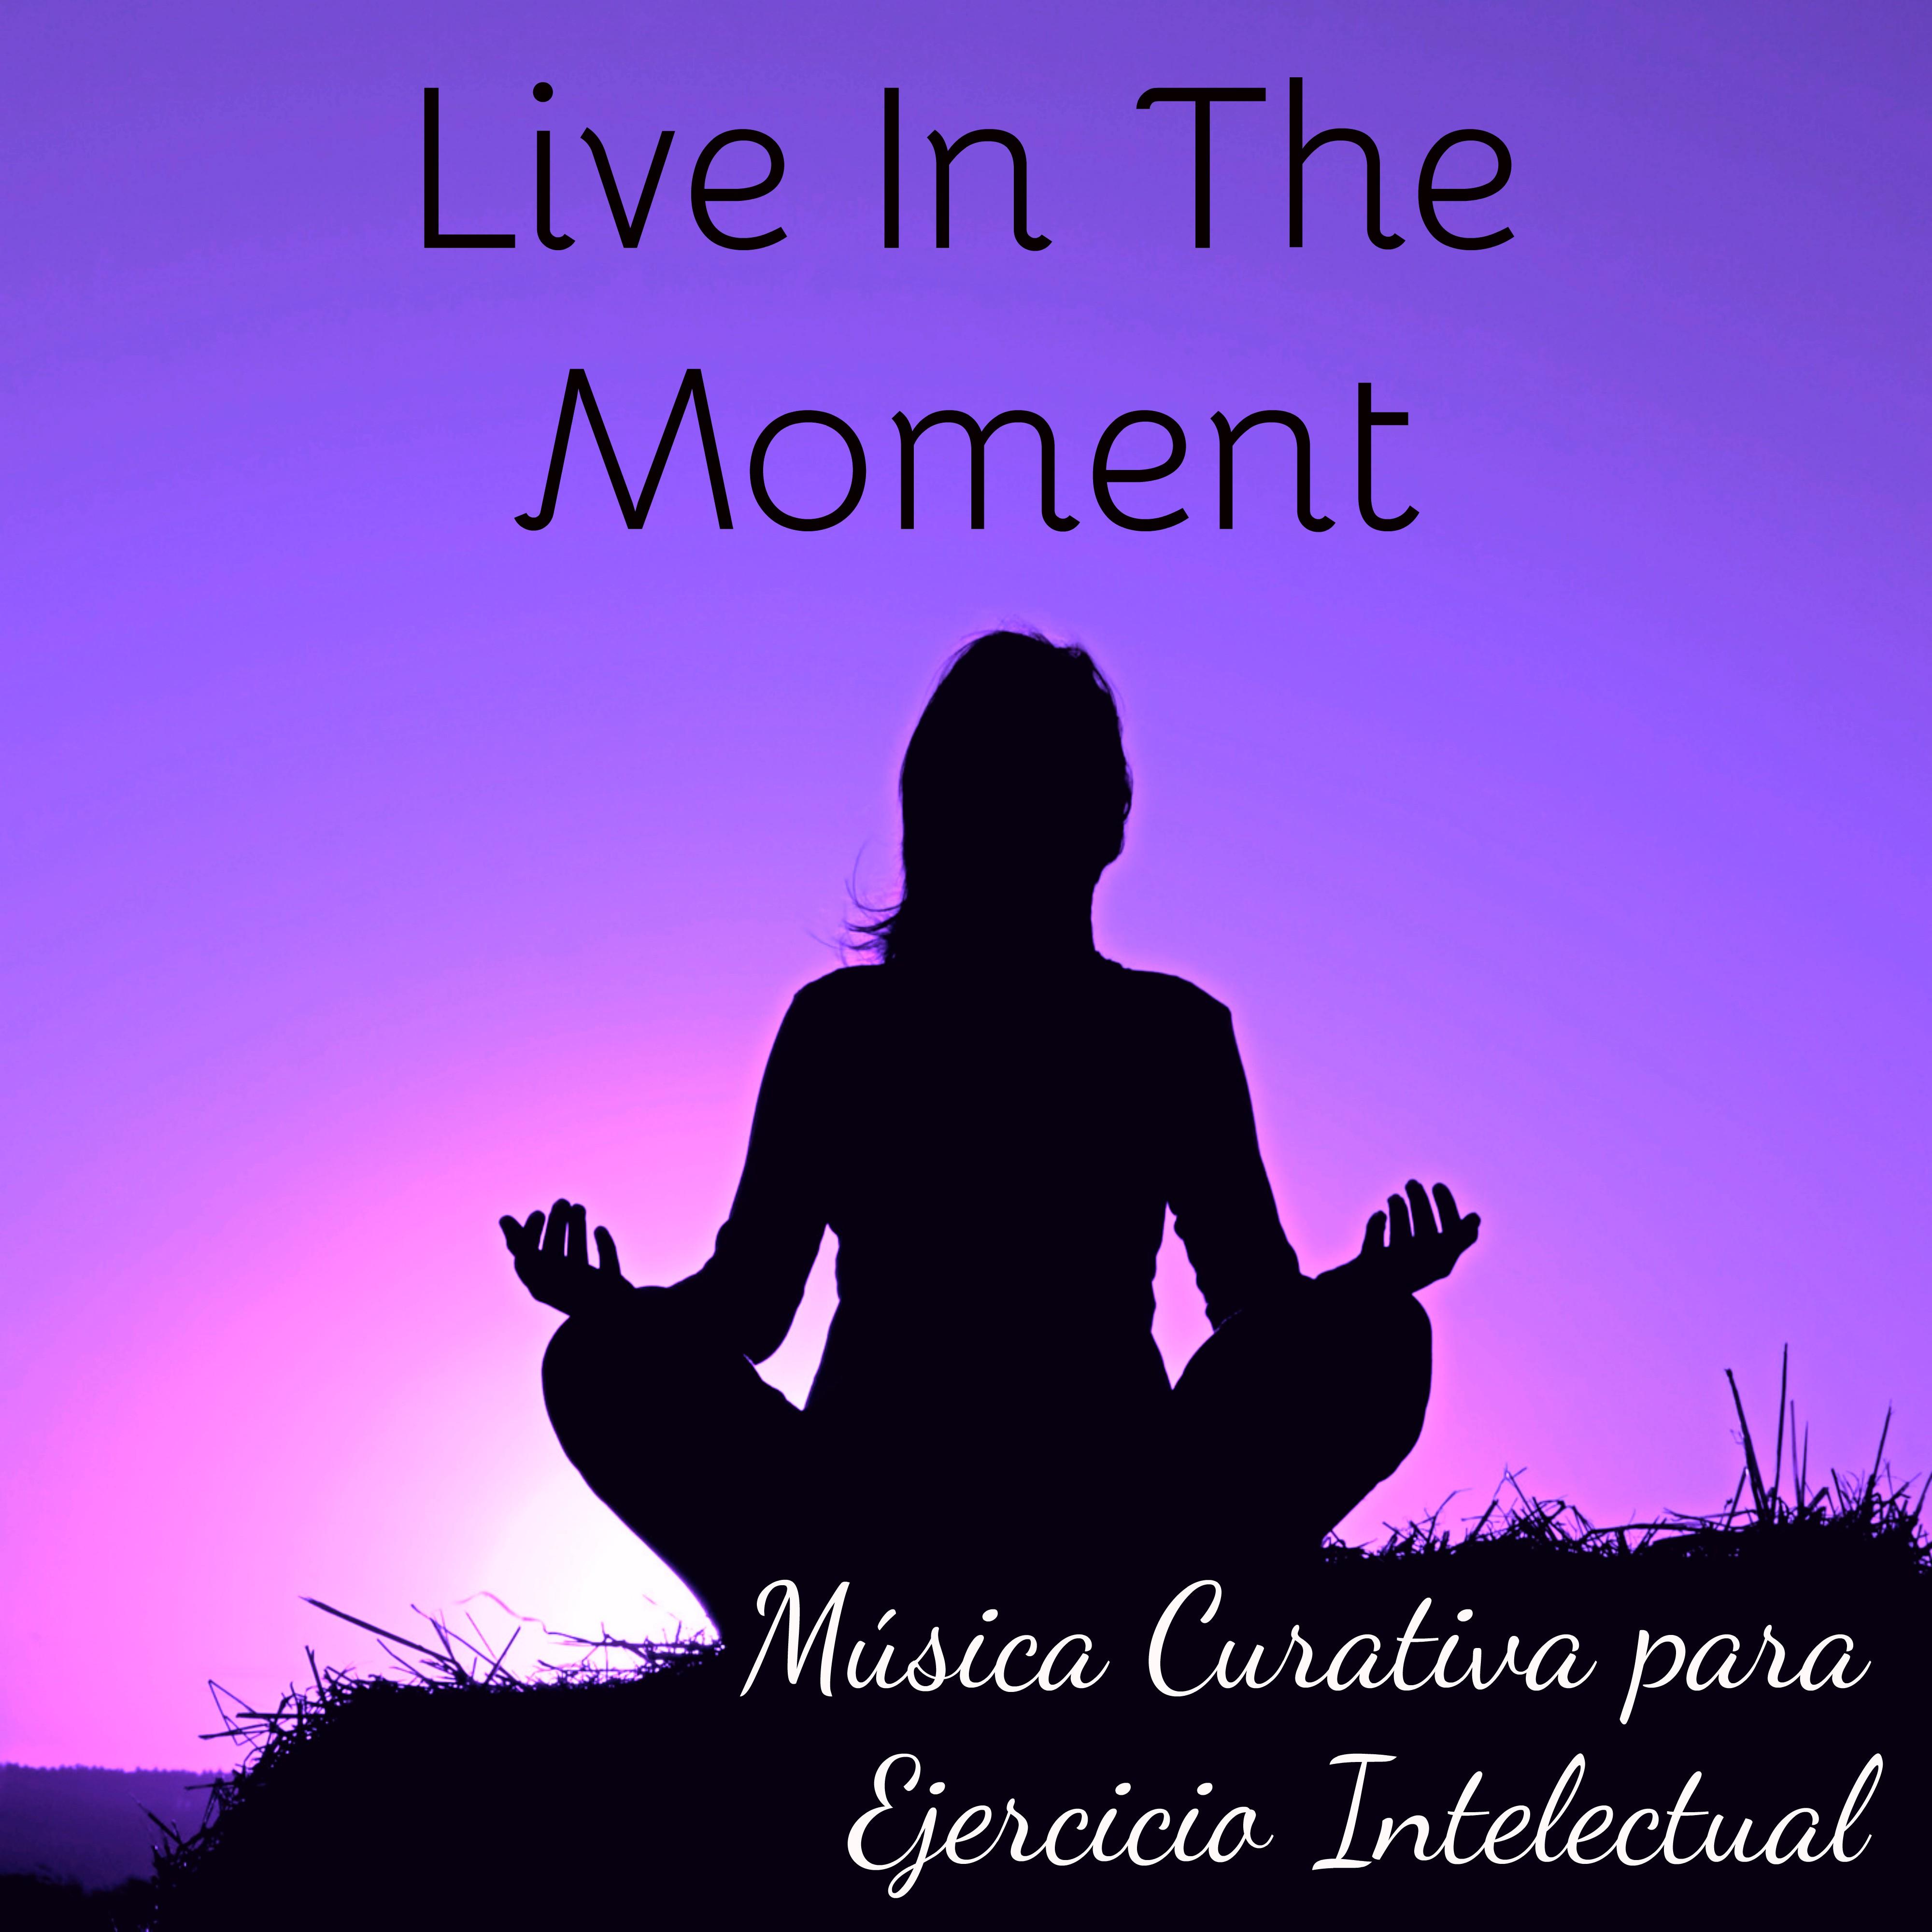 Live In The Moment - Música Curativa para Ejercicio Intelectual Terapia de Sonido y Sanar El Alma